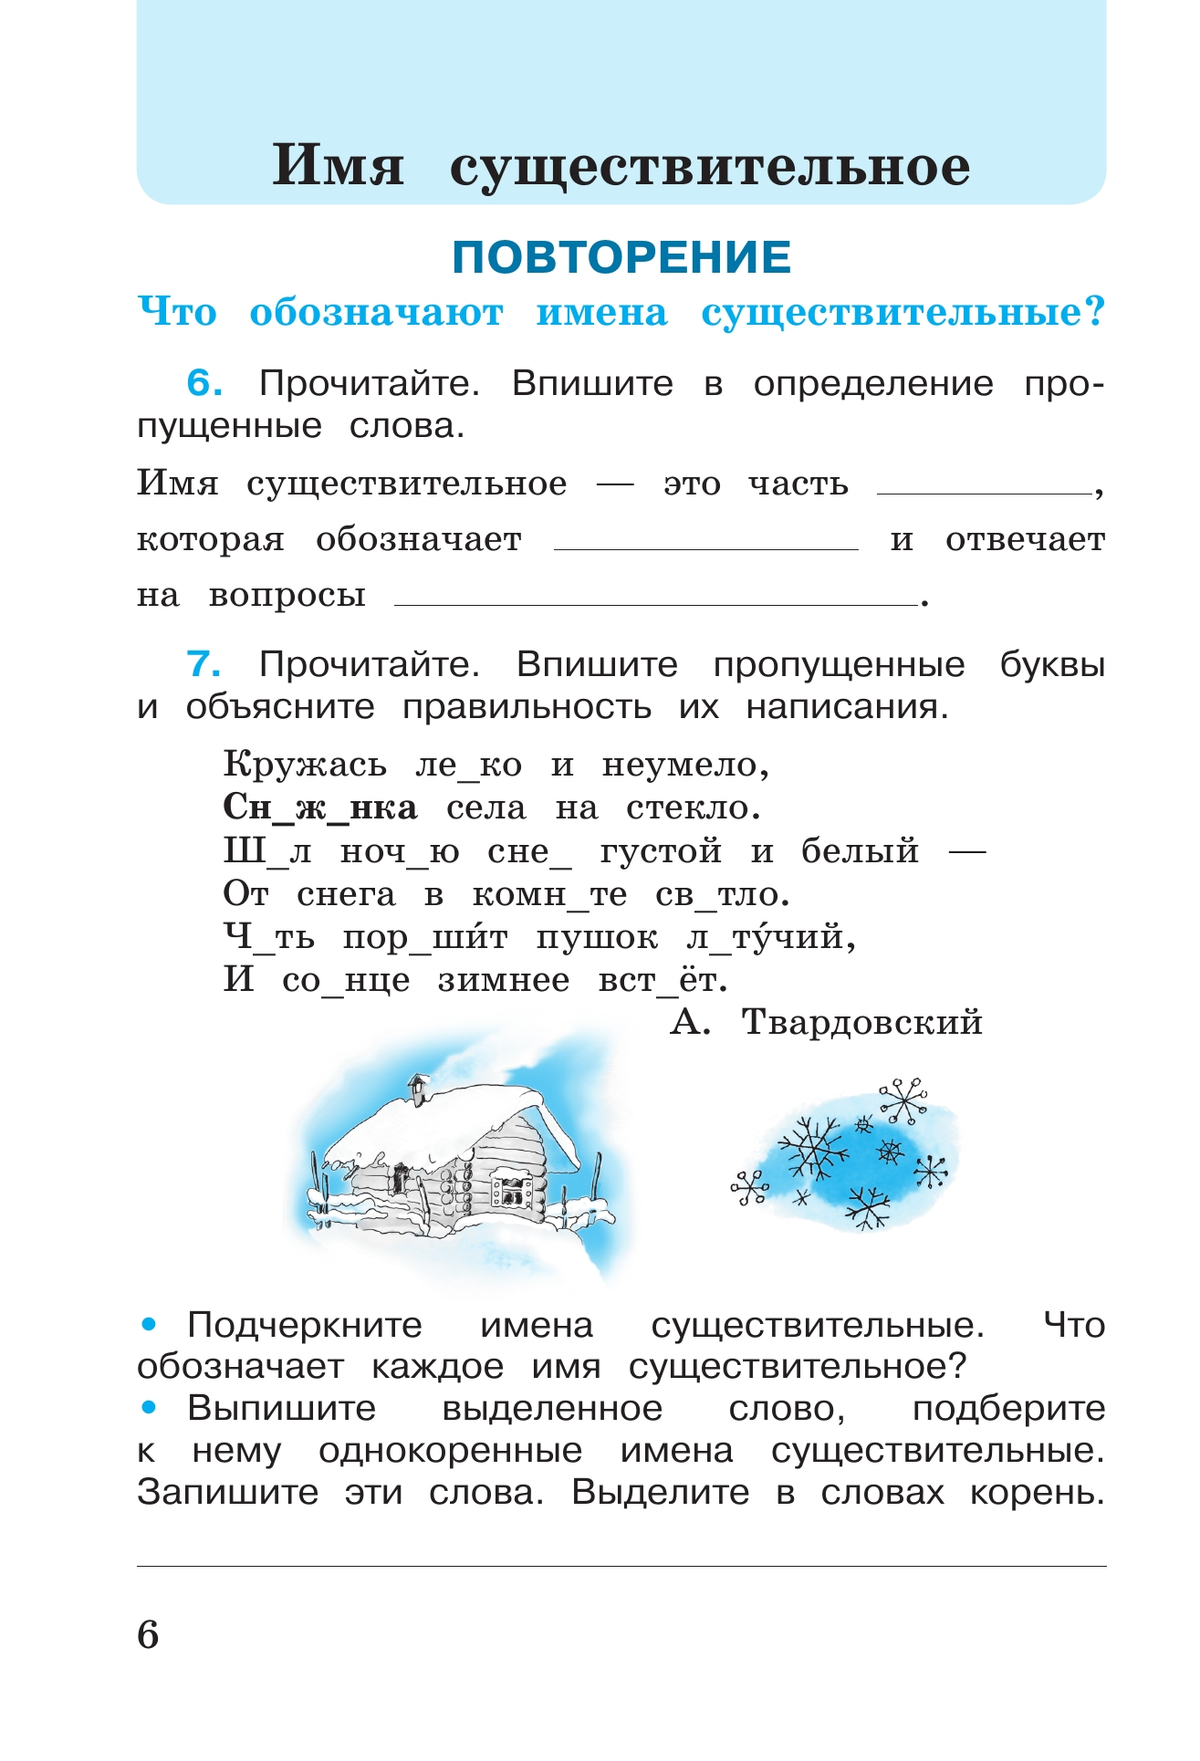 Русский язык. Рабочая тетрадь. 3 класс. В 2-х ч. Ч. 2 7